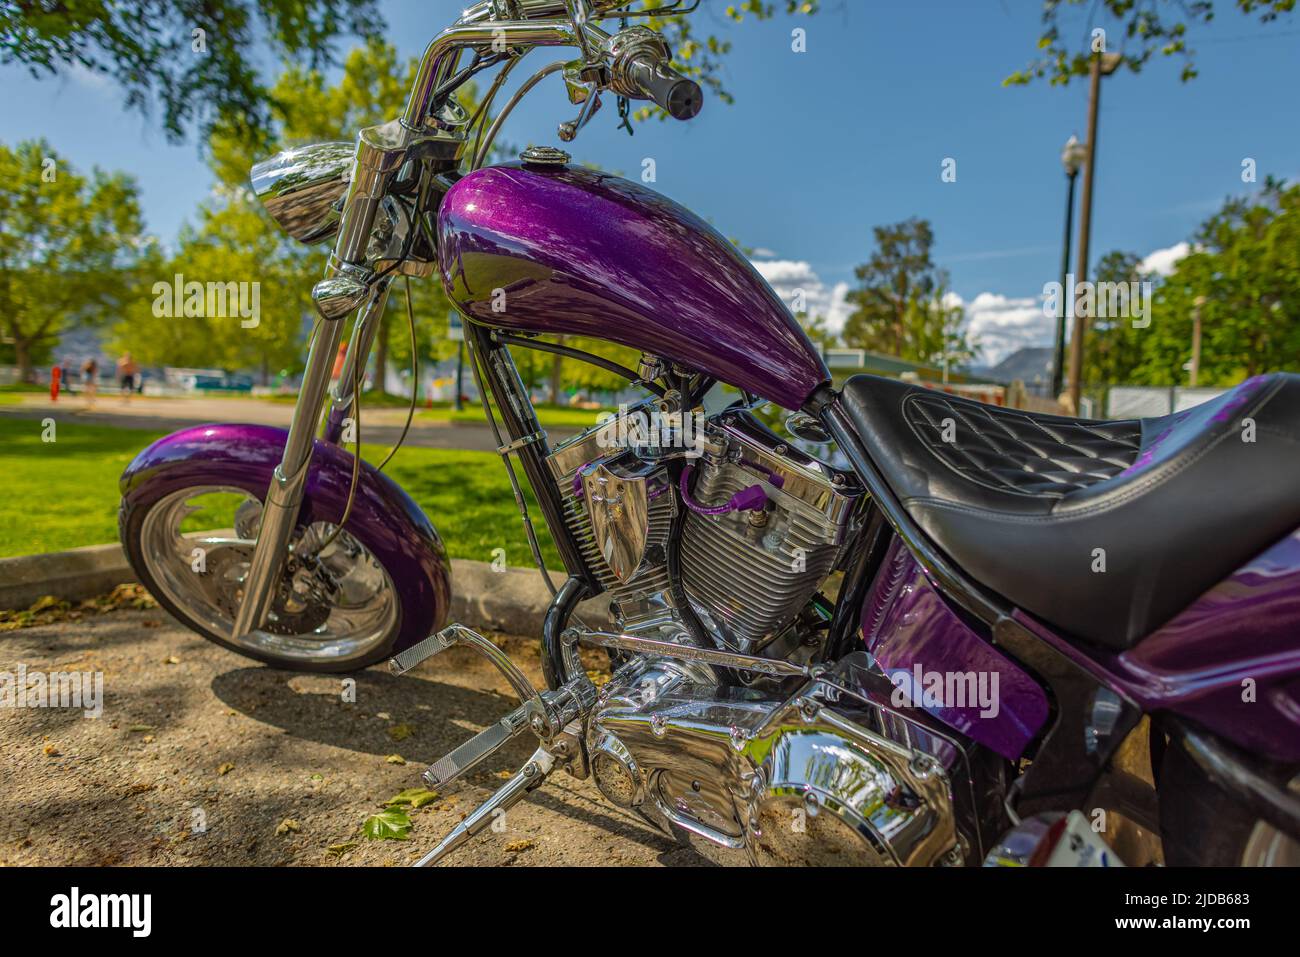 Serenity Bike Works Graped Ape: One sweet purple chopper